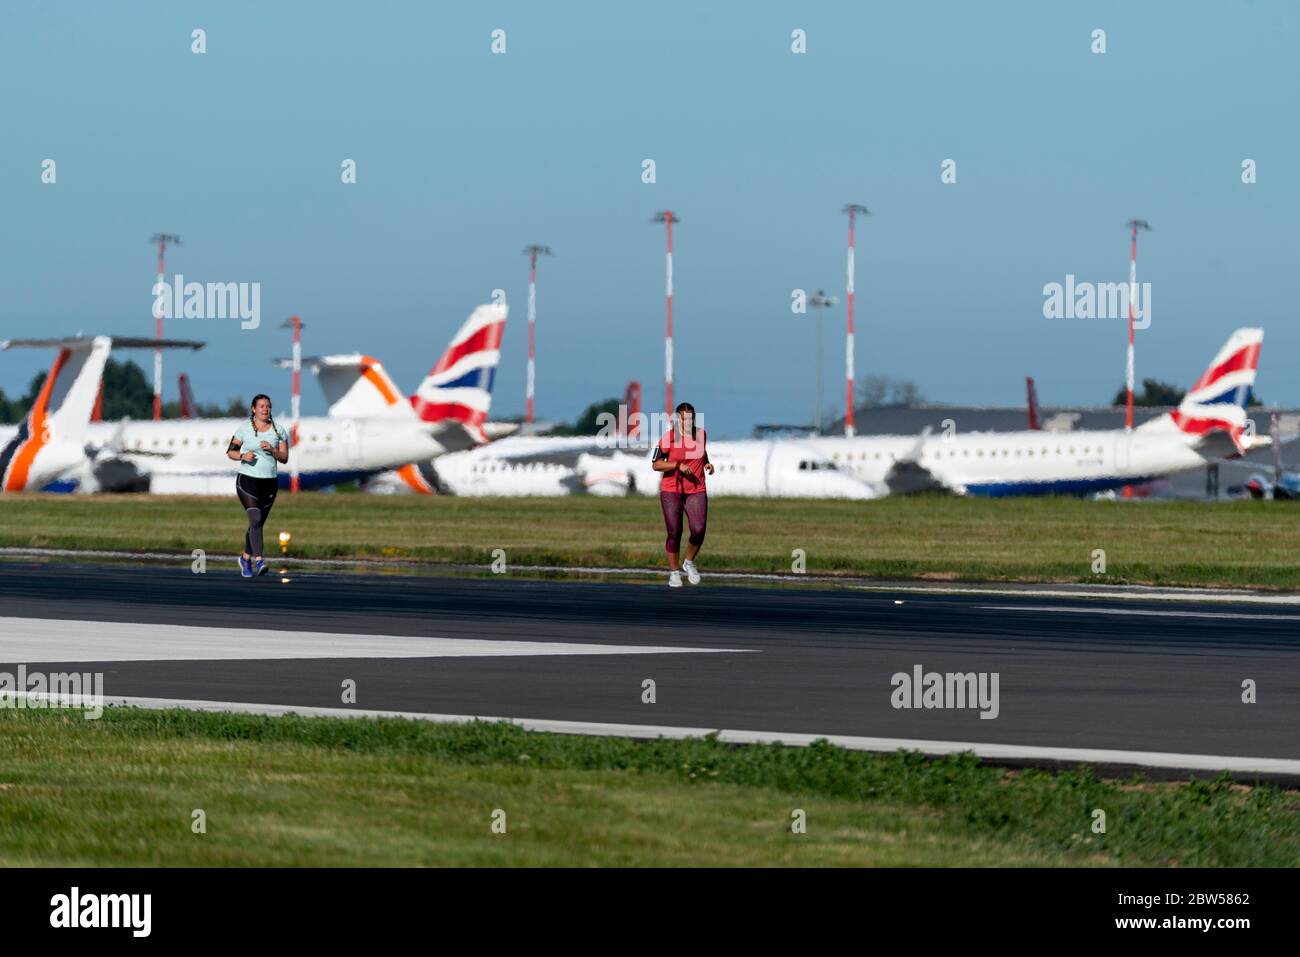 Gesponserter Spendenlauf, der auf der Start- und Landebahn am Flughafen London Southend, Essex, Großbritannien, stattfindet, da keine Flüge verfügbar sind. Geerdeter British Airways Jet Stockfoto